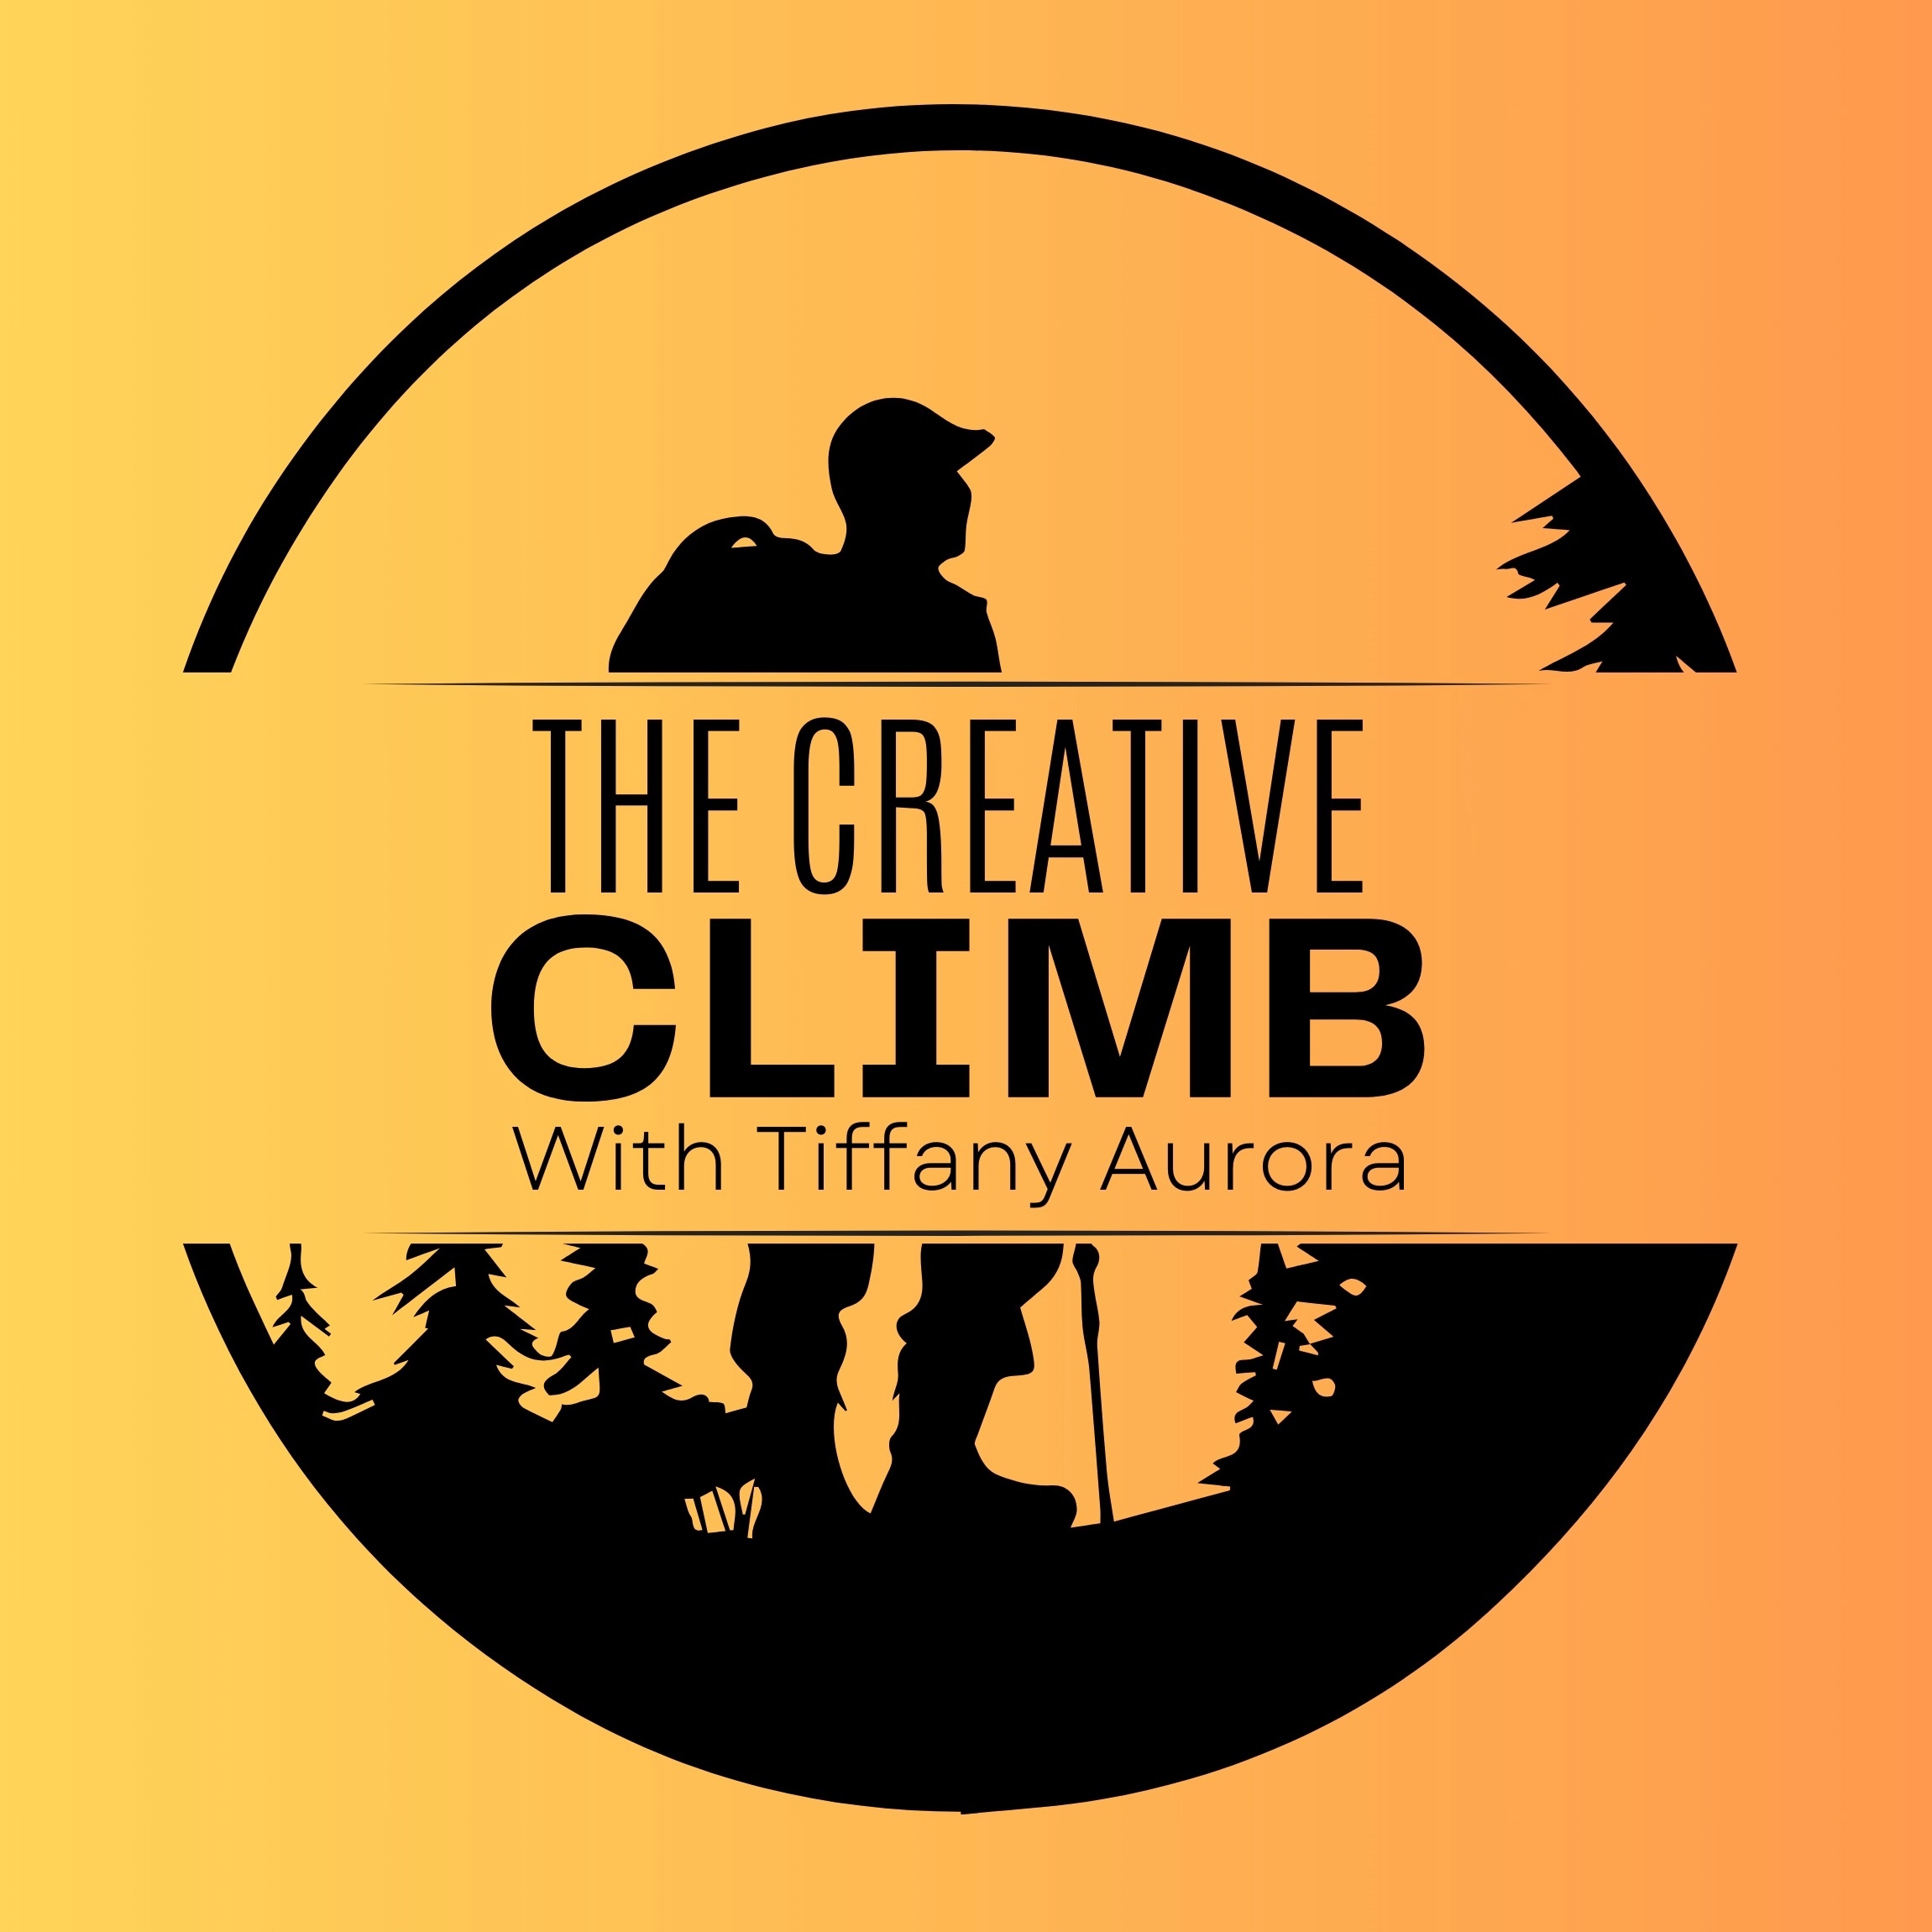 The Creative Climb with Tiffany Aurora